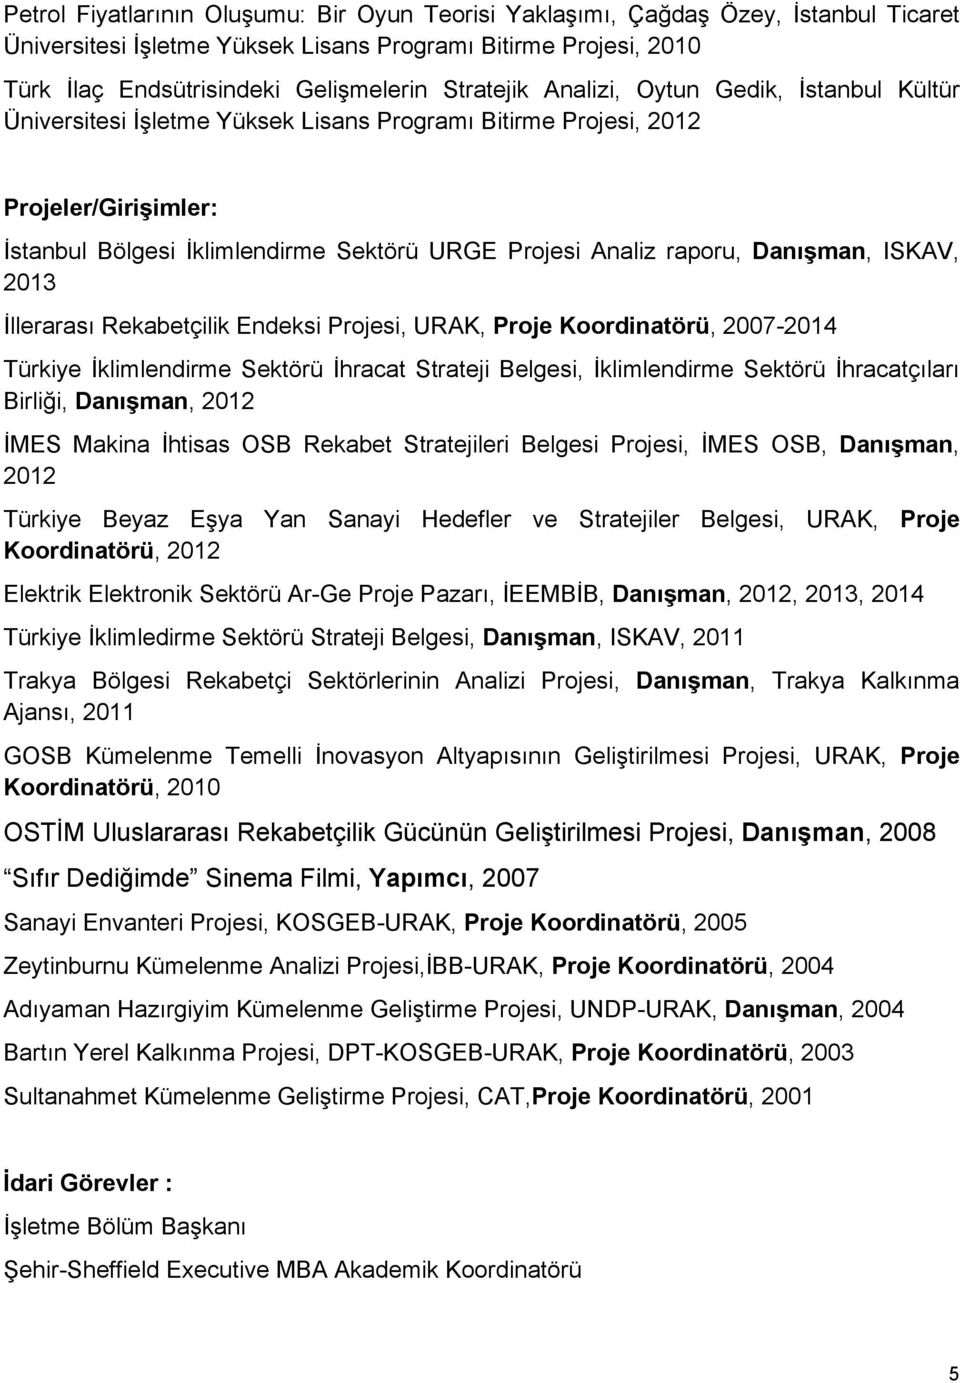 raporu, Danışman, ISKAV, 2013 İllerarası Rekabetçilik Endeksi Projesi, URAK, Proje Koordinatörü, 2007-2014 Türkiye İklimlendirme Sektörü İhracat Strateji Belgesi, İklimlendirme Sektörü İhracatçıları